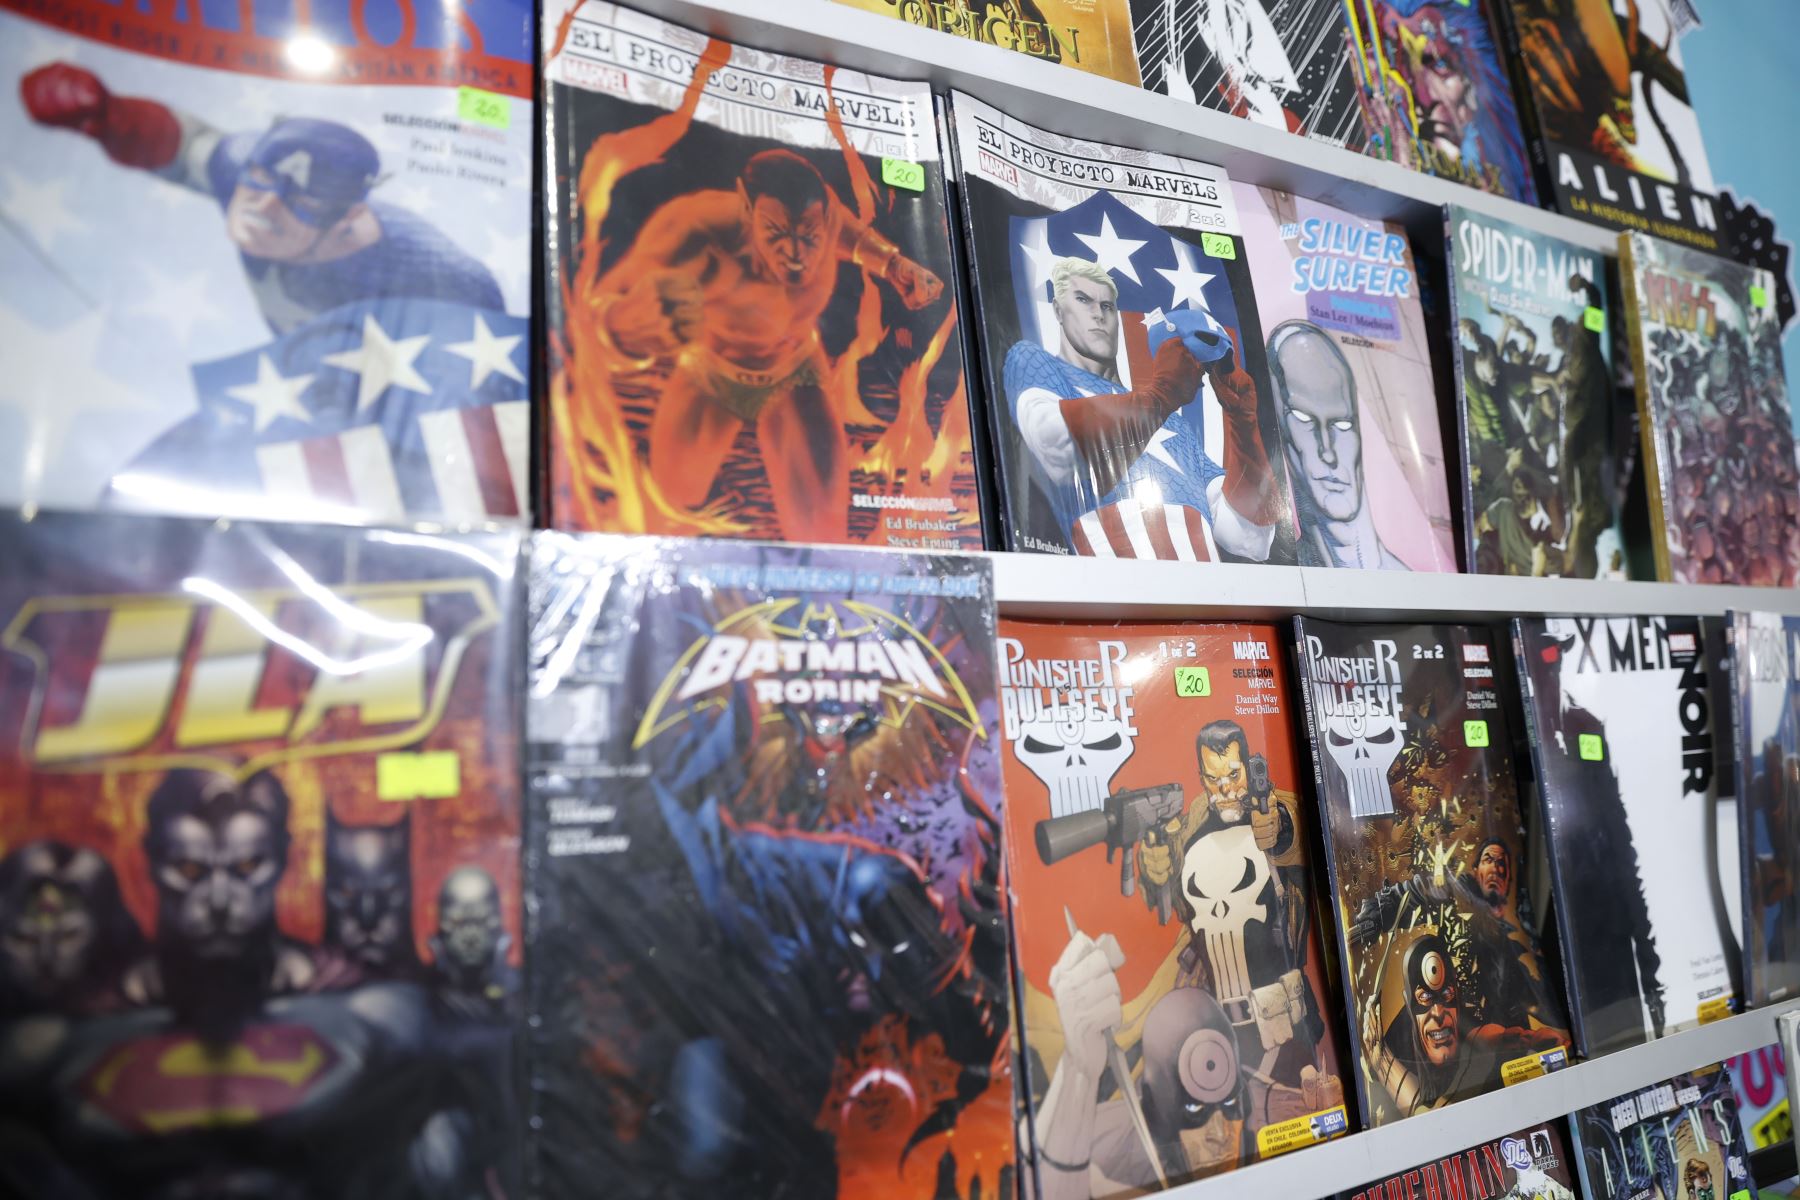 Comics cautivan a lectores limeños en la Feria Internacional del Libro 2022. Foto: ANDINA/Melina Mejía